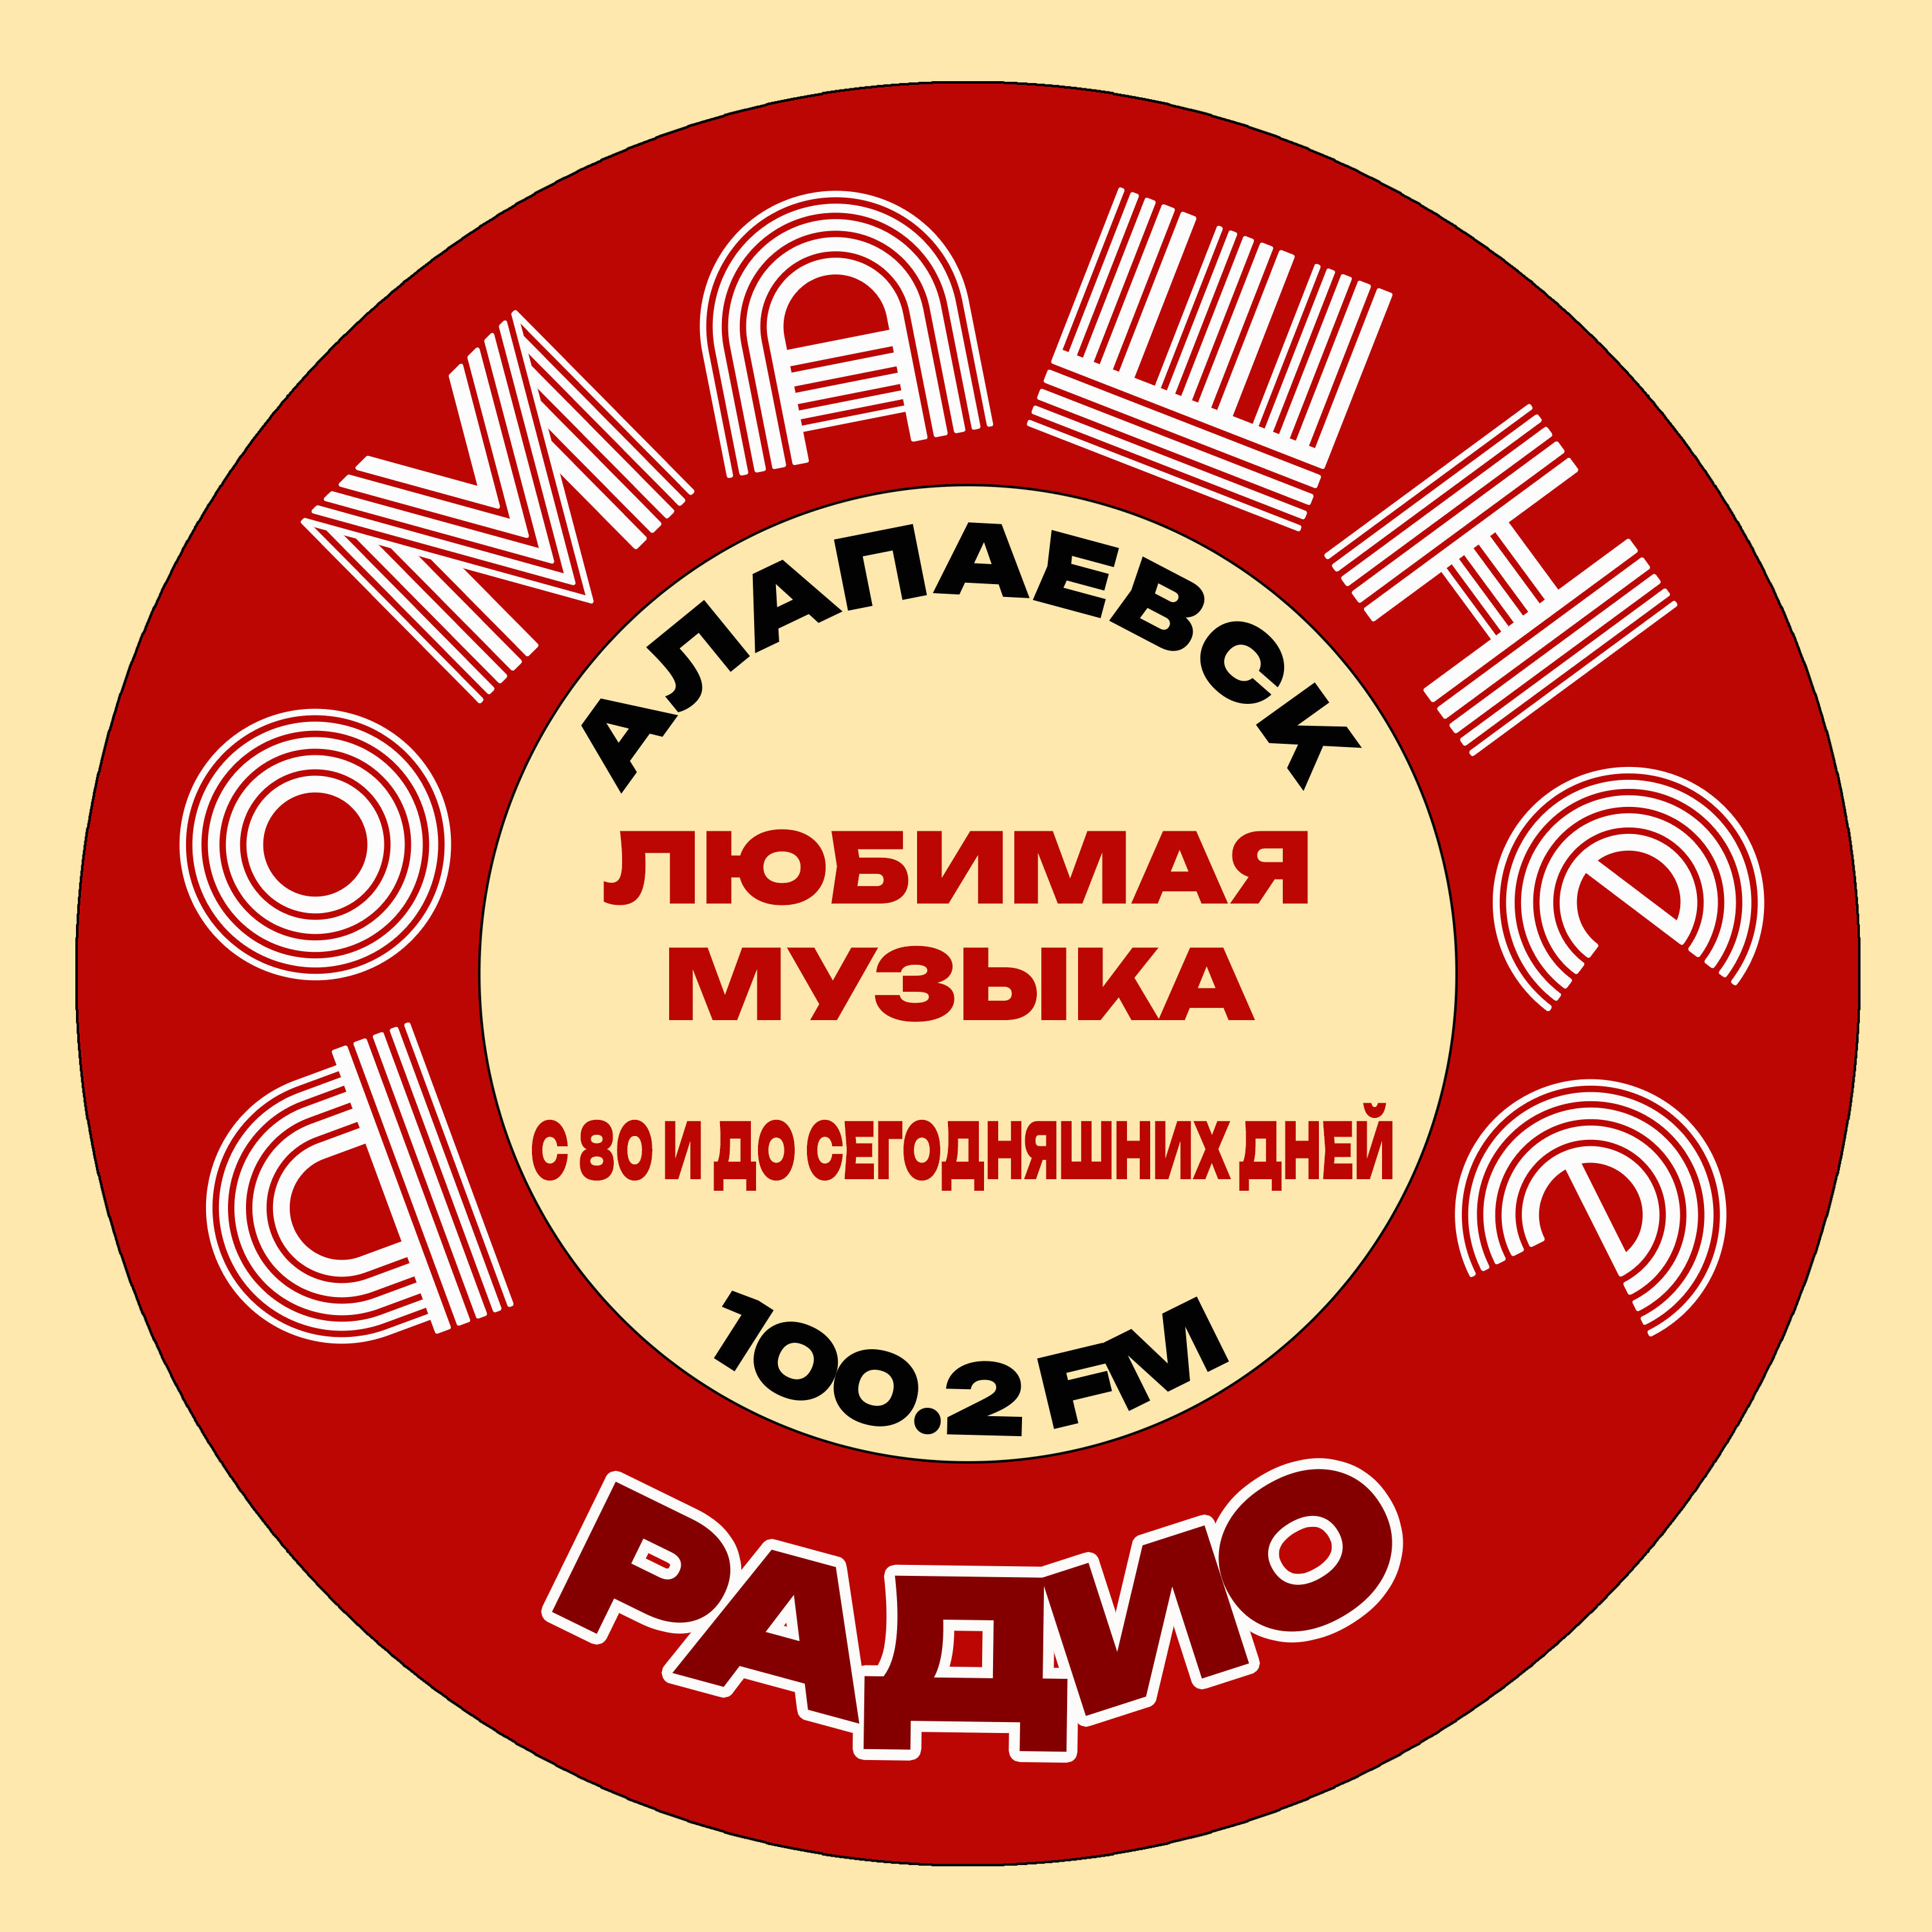 Домашнее Радио (Алапаевск, 100.2)